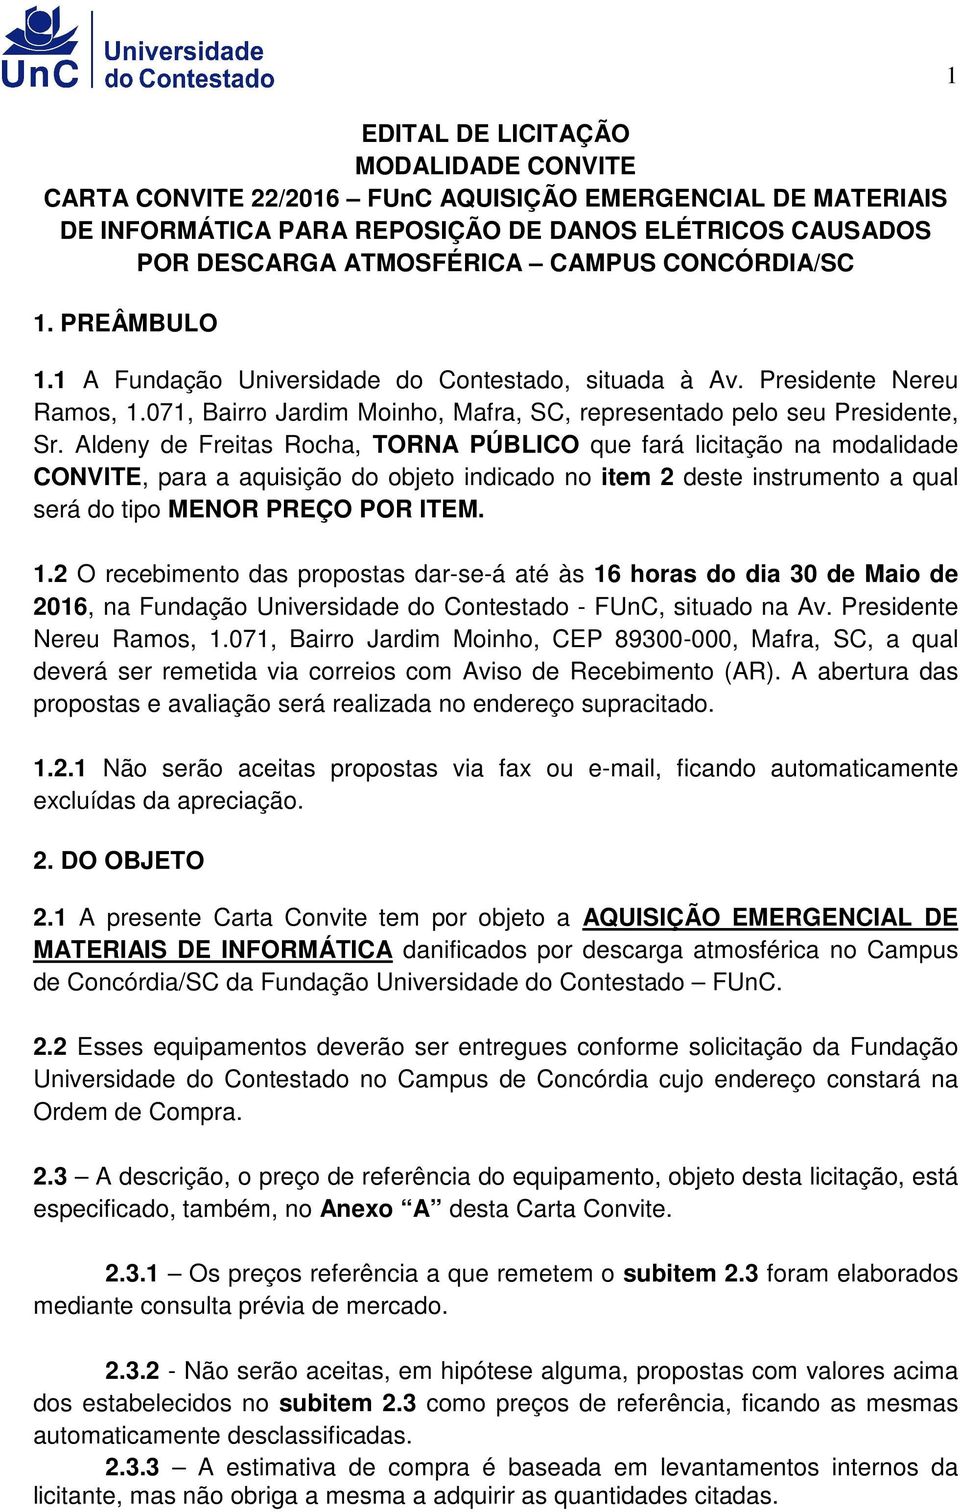 Aldeny de Freitas Rocha, TORNA PÚBLICO que fará licitação na modalidade CONVITE, para a aquisição do objeto indicado no item 2 deste instrumento a qual será do tipo MENOR PREÇO POR ITEM. 1.